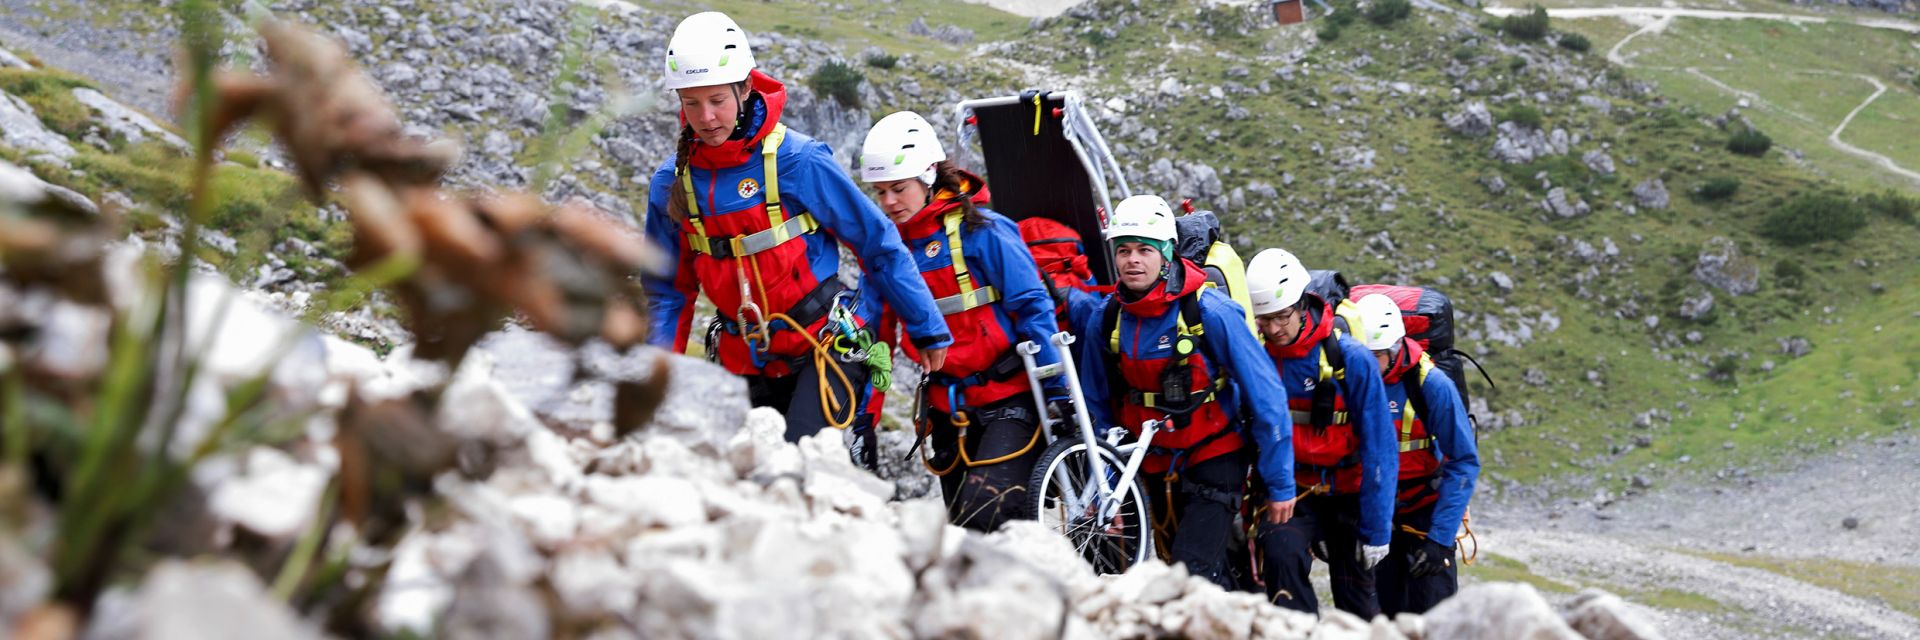 100 Jahre DRK Bergwacht: Team läuft einen Hang aufwärts